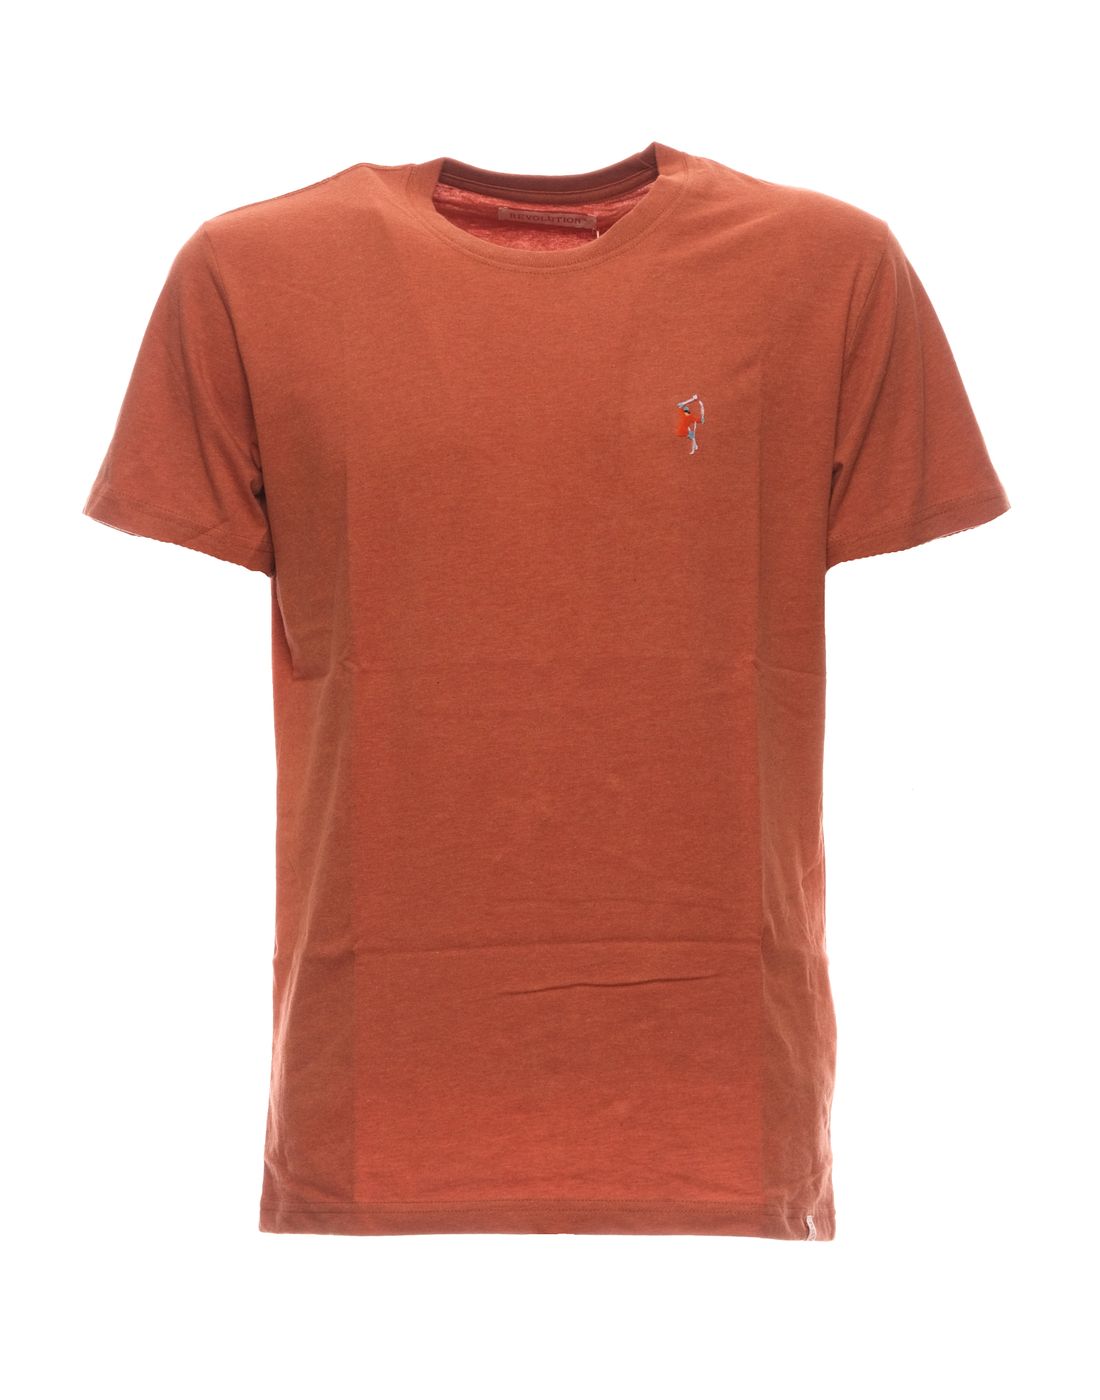 Camiseta para el hombre 1294 Orange-Mel REVOLUTION